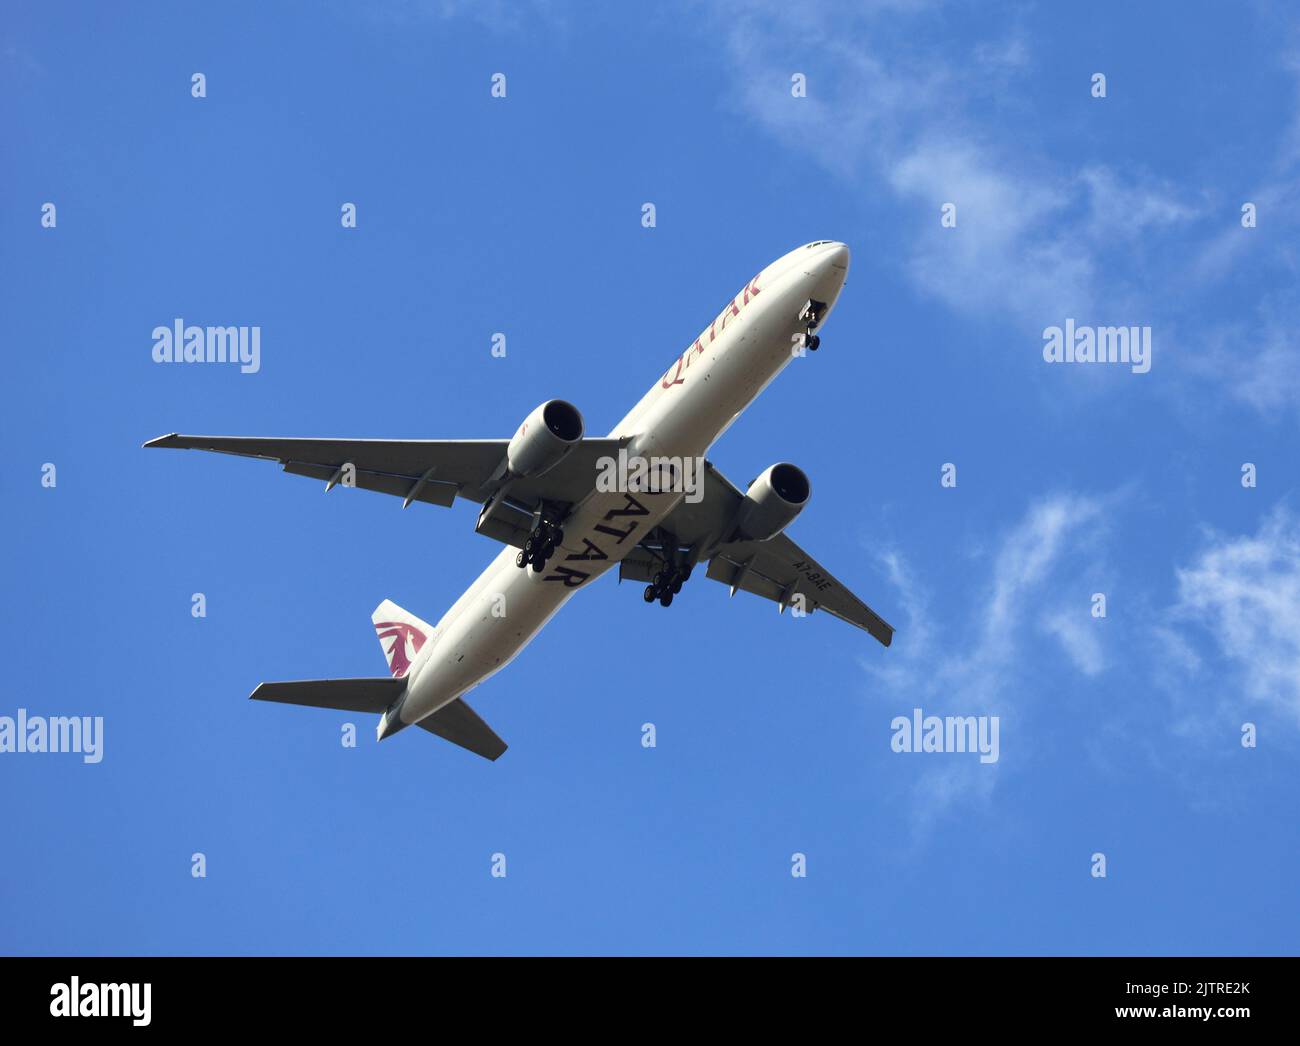 Passagier-Jet-Flugzeug, das direkt oben in einem klaren blauen Himmel fliegt Stockfoto